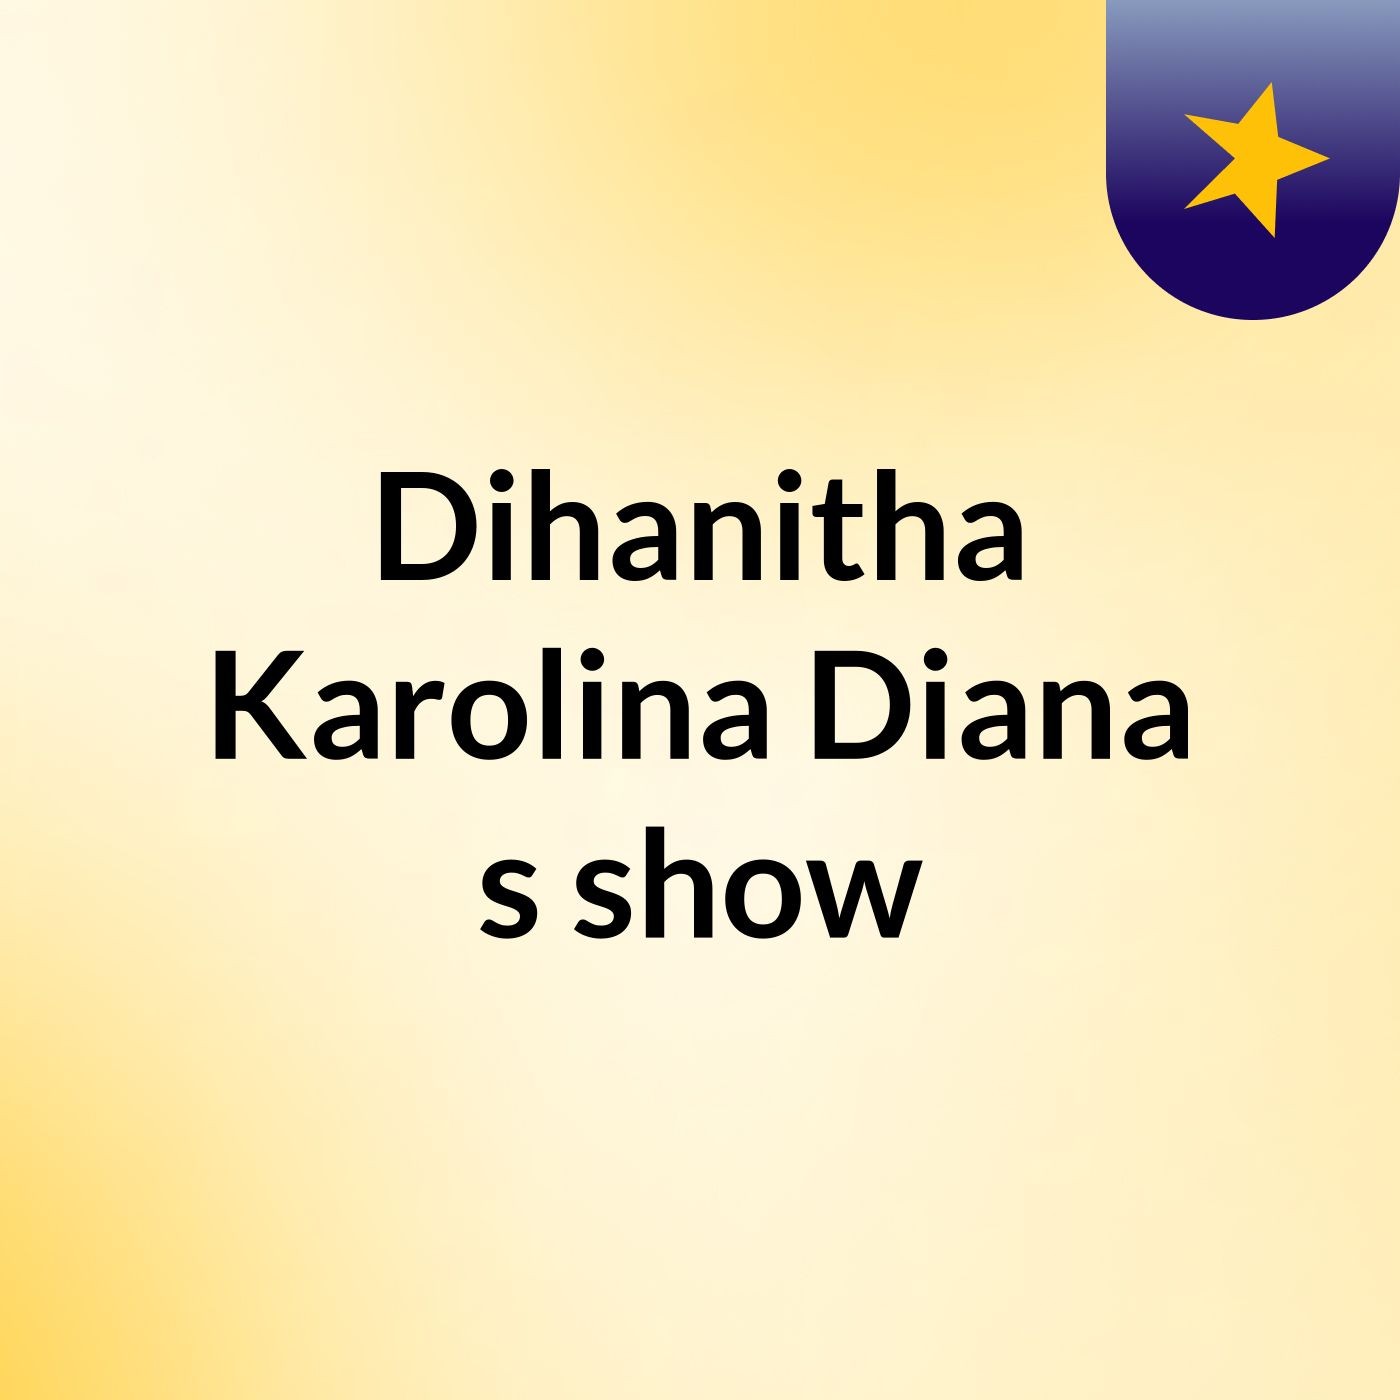 Dihanitha Karolina Diana's show